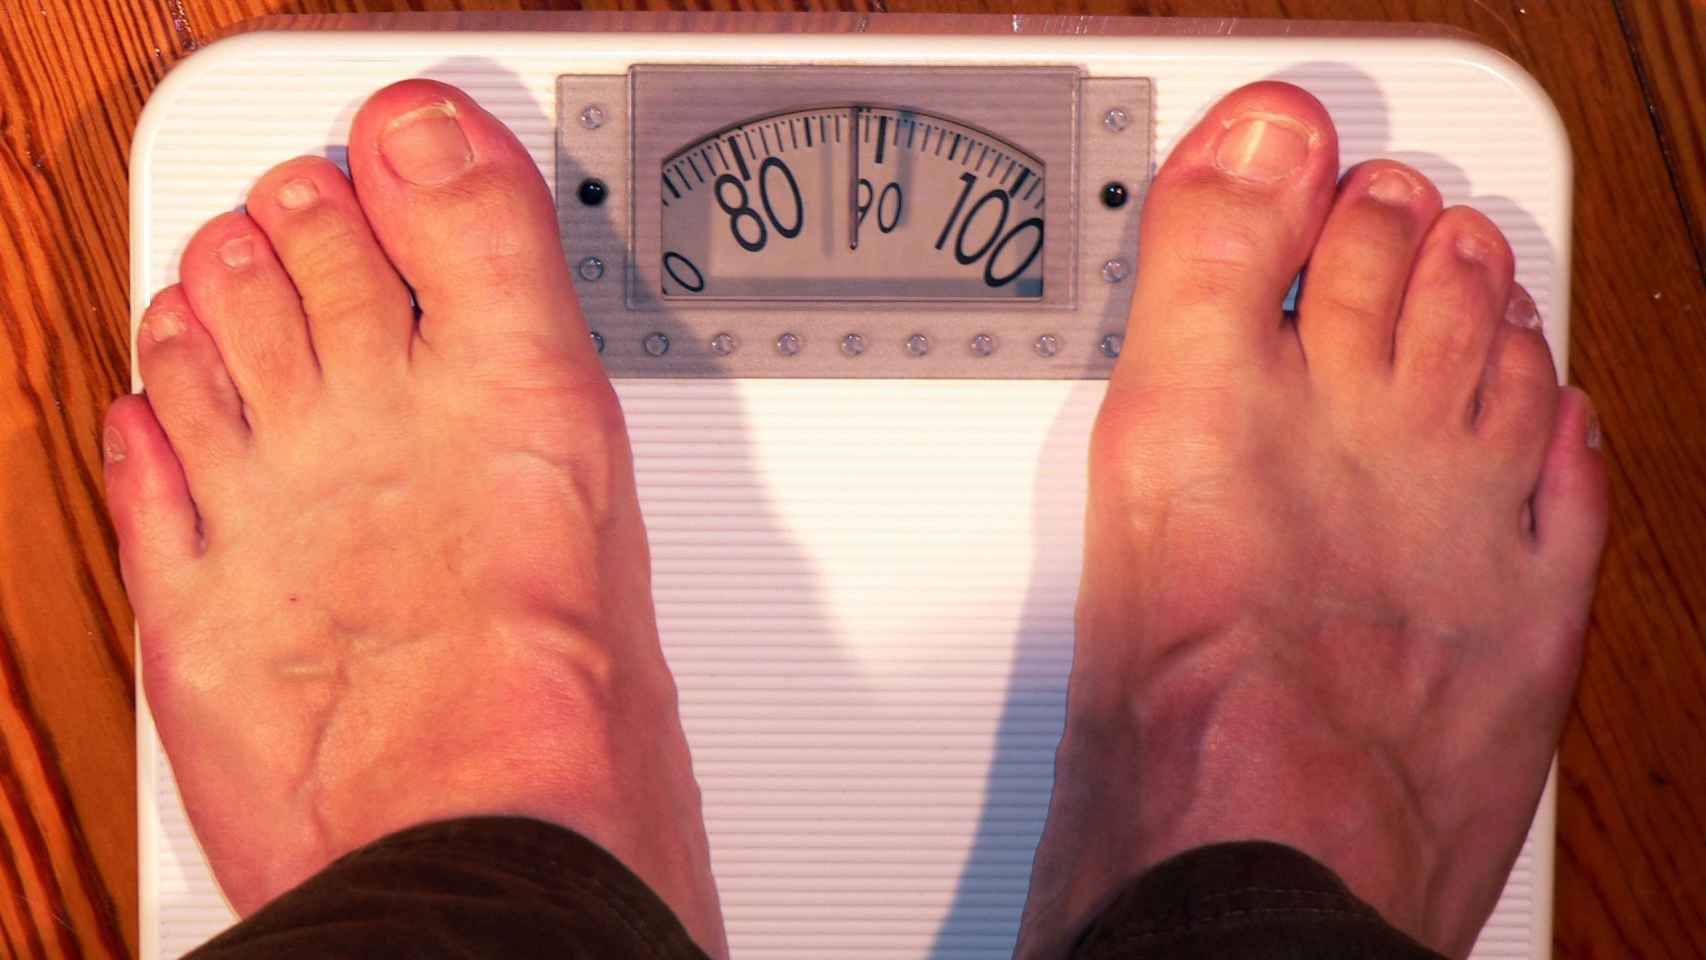 Los problemas psicológicos asociados a la obesidad y el sobrepeso pueden acentuarse en verano